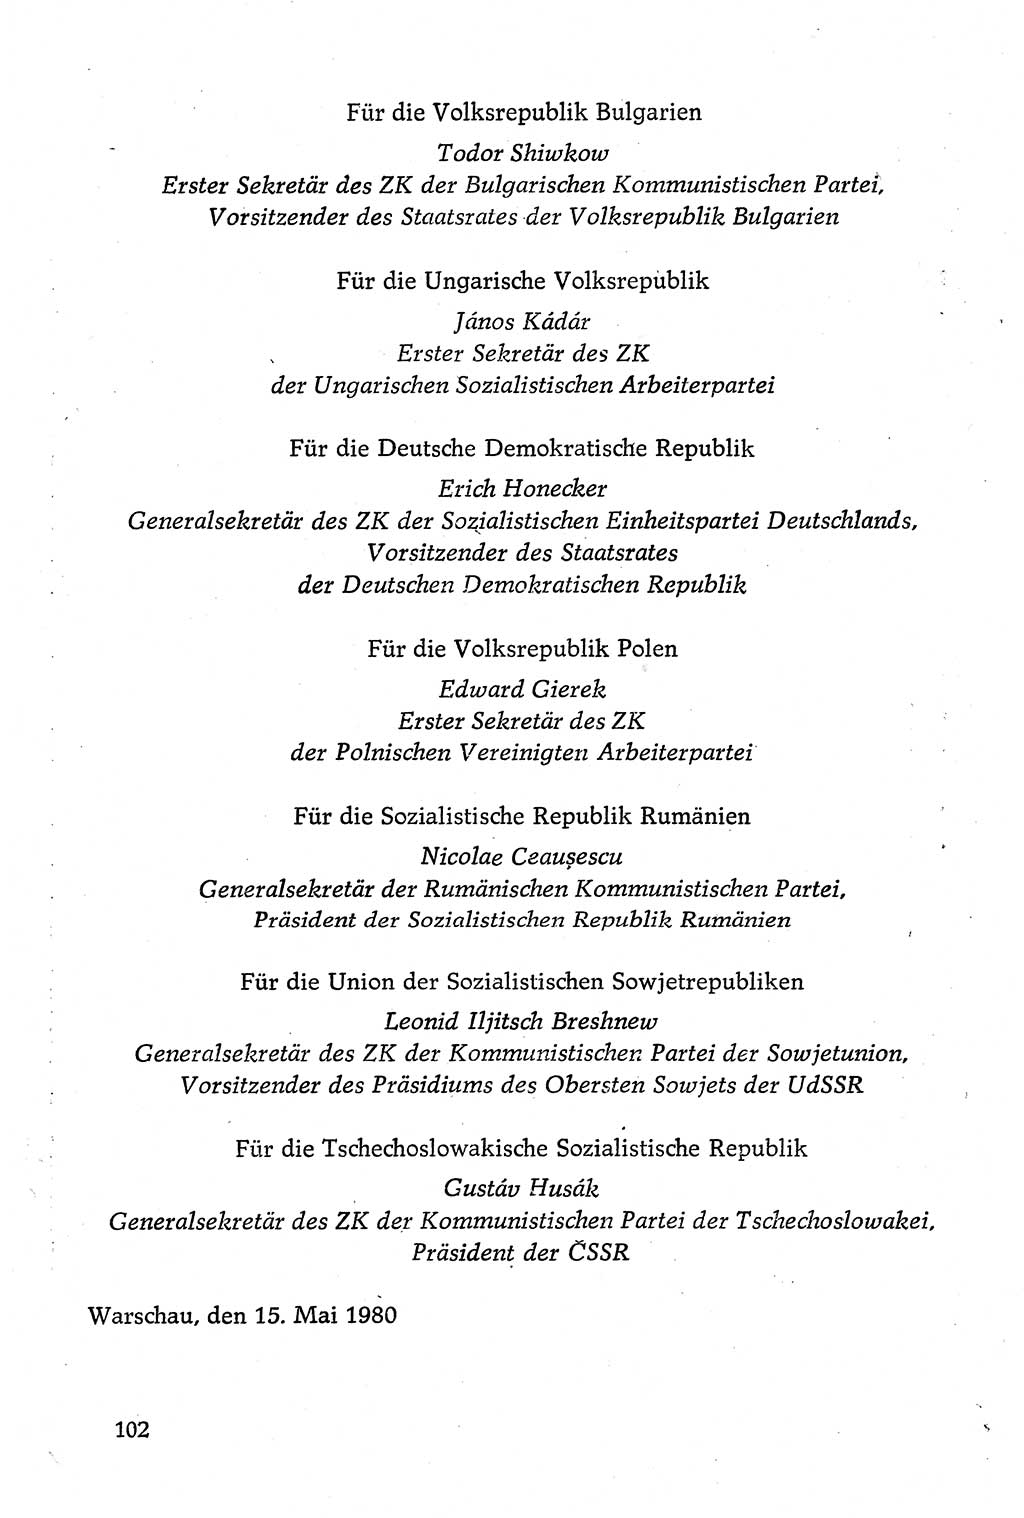 Dokumente der Sozialistischen Einheitspartei Deutschlands (SED) [Deutsche Demokratische Republik (DDR)] 1980-1981, Seite 102 (Dok. SED DDR 1980-1981, S. 102)